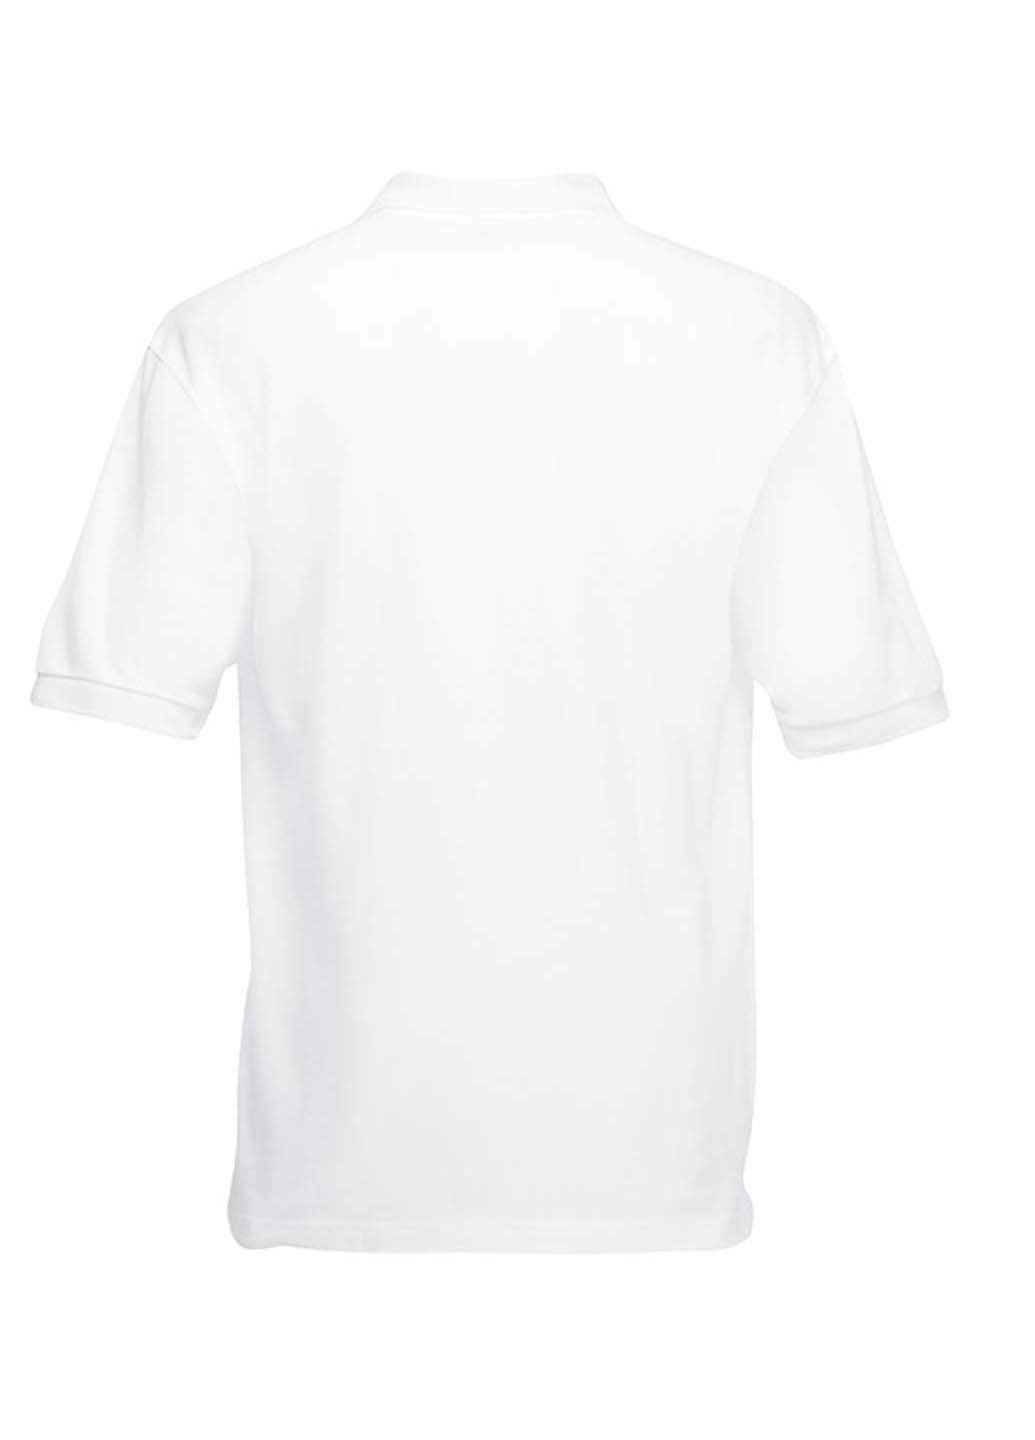 Белая детская футболка-поло для мальчика Fruit of the Loom